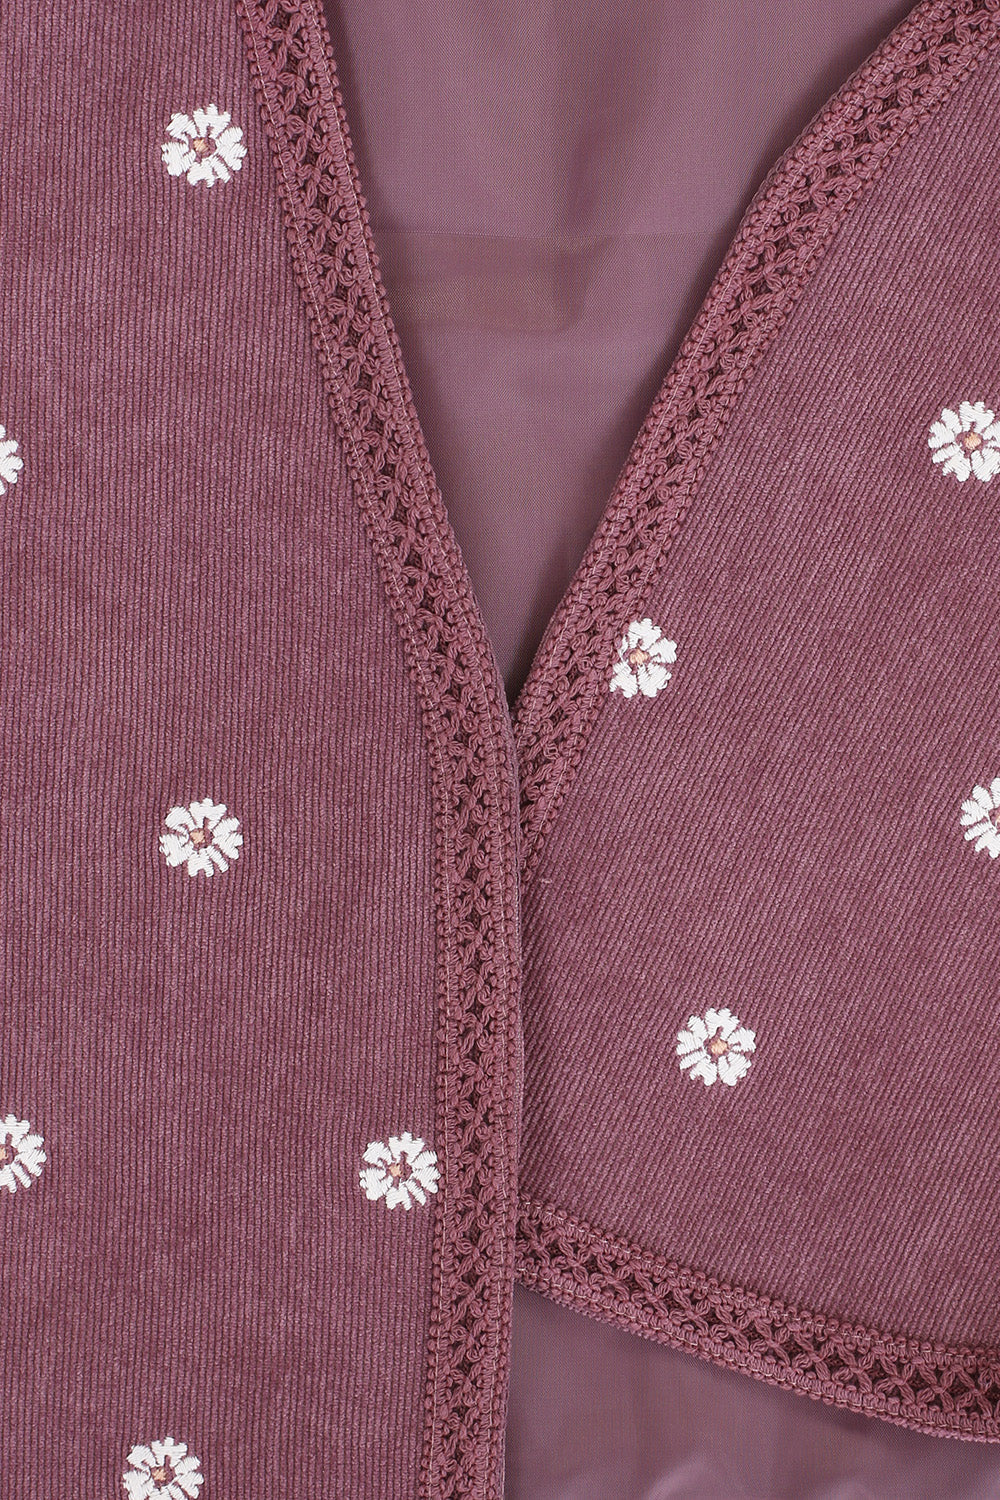 Meisjes Embroidered Gilet van LOOXS Little in de kleur Mauve Blush in maat 128-134.